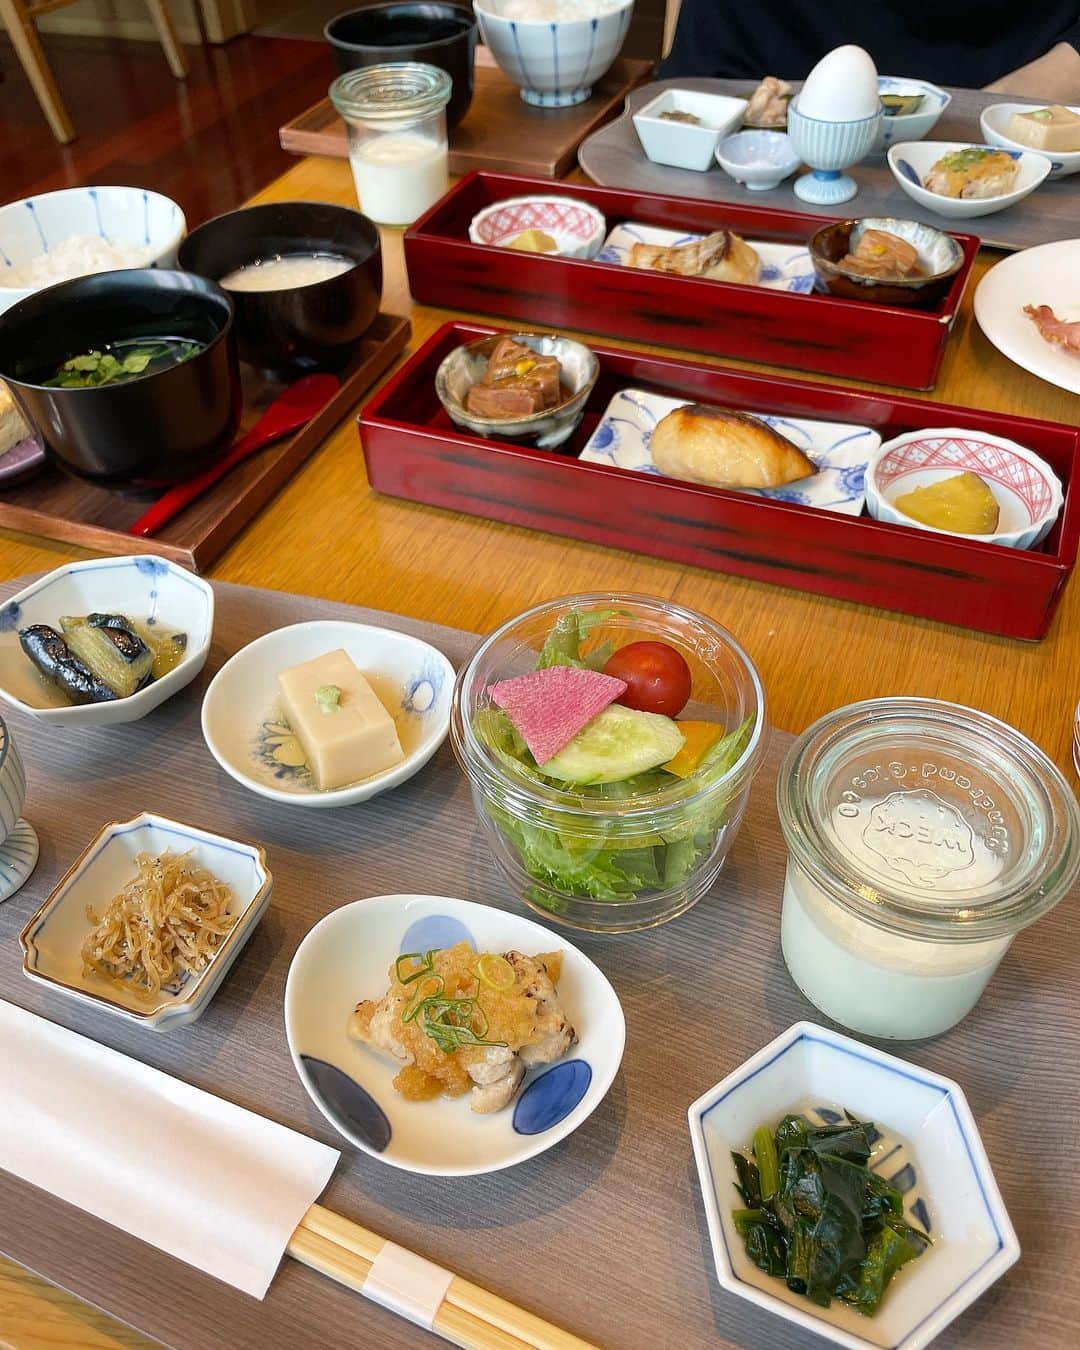 伊藤沙織のインスタグラム：「@mitsuigardenhotels はどこのホテルも朝食が充実しているそうです🕊  日本橋プレミアでは、金沢にある「浅田屋」が「日本橋浅田」として 料亭の味わいをそのままビュッフェ形式でいただくことができます。  小鉢に盛り付けられたおかずがどれも美味しくて、かなり満足度の高い朝食です🌿  今回ステイしたのはジュニアスイートのお部屋でした☺️ 広々としていて、黒を基調としたシックでラグジュアリーな空間。  江戸切子や江戸漆器の花瓶など、部屋の細部に日本伝統に飾られている和洋折衷も愉しめます🌸  夜は9階にあるBAR松へ🍸日本橋浅田の食事もオーダーでき、ドリンクも季節の果物を使った凝ったメニューもあります🍊🍓🥝 私はノンアルのオレンジドリンクをいただきました🍊  ちなみに日本橋プレミアでは大浴場もあるのが嬉しいポイント♨︎  都内だけど、充分にくつろぐことができる特別な時間を過ごす事が出来ました🫶  チェックアウトも12:00という、ゆっくり過ごせるのも魅力的な点です🥰  三越前駅直結で便利だけでなく、日本橋付近なので近くを散歩するだけでも楽しめるかと思います🌿  #三井ガーデンホテル #三井ガーデンホテル日本橋プレミア  #ホテルステイ #mitsuigardenhotel #pr」